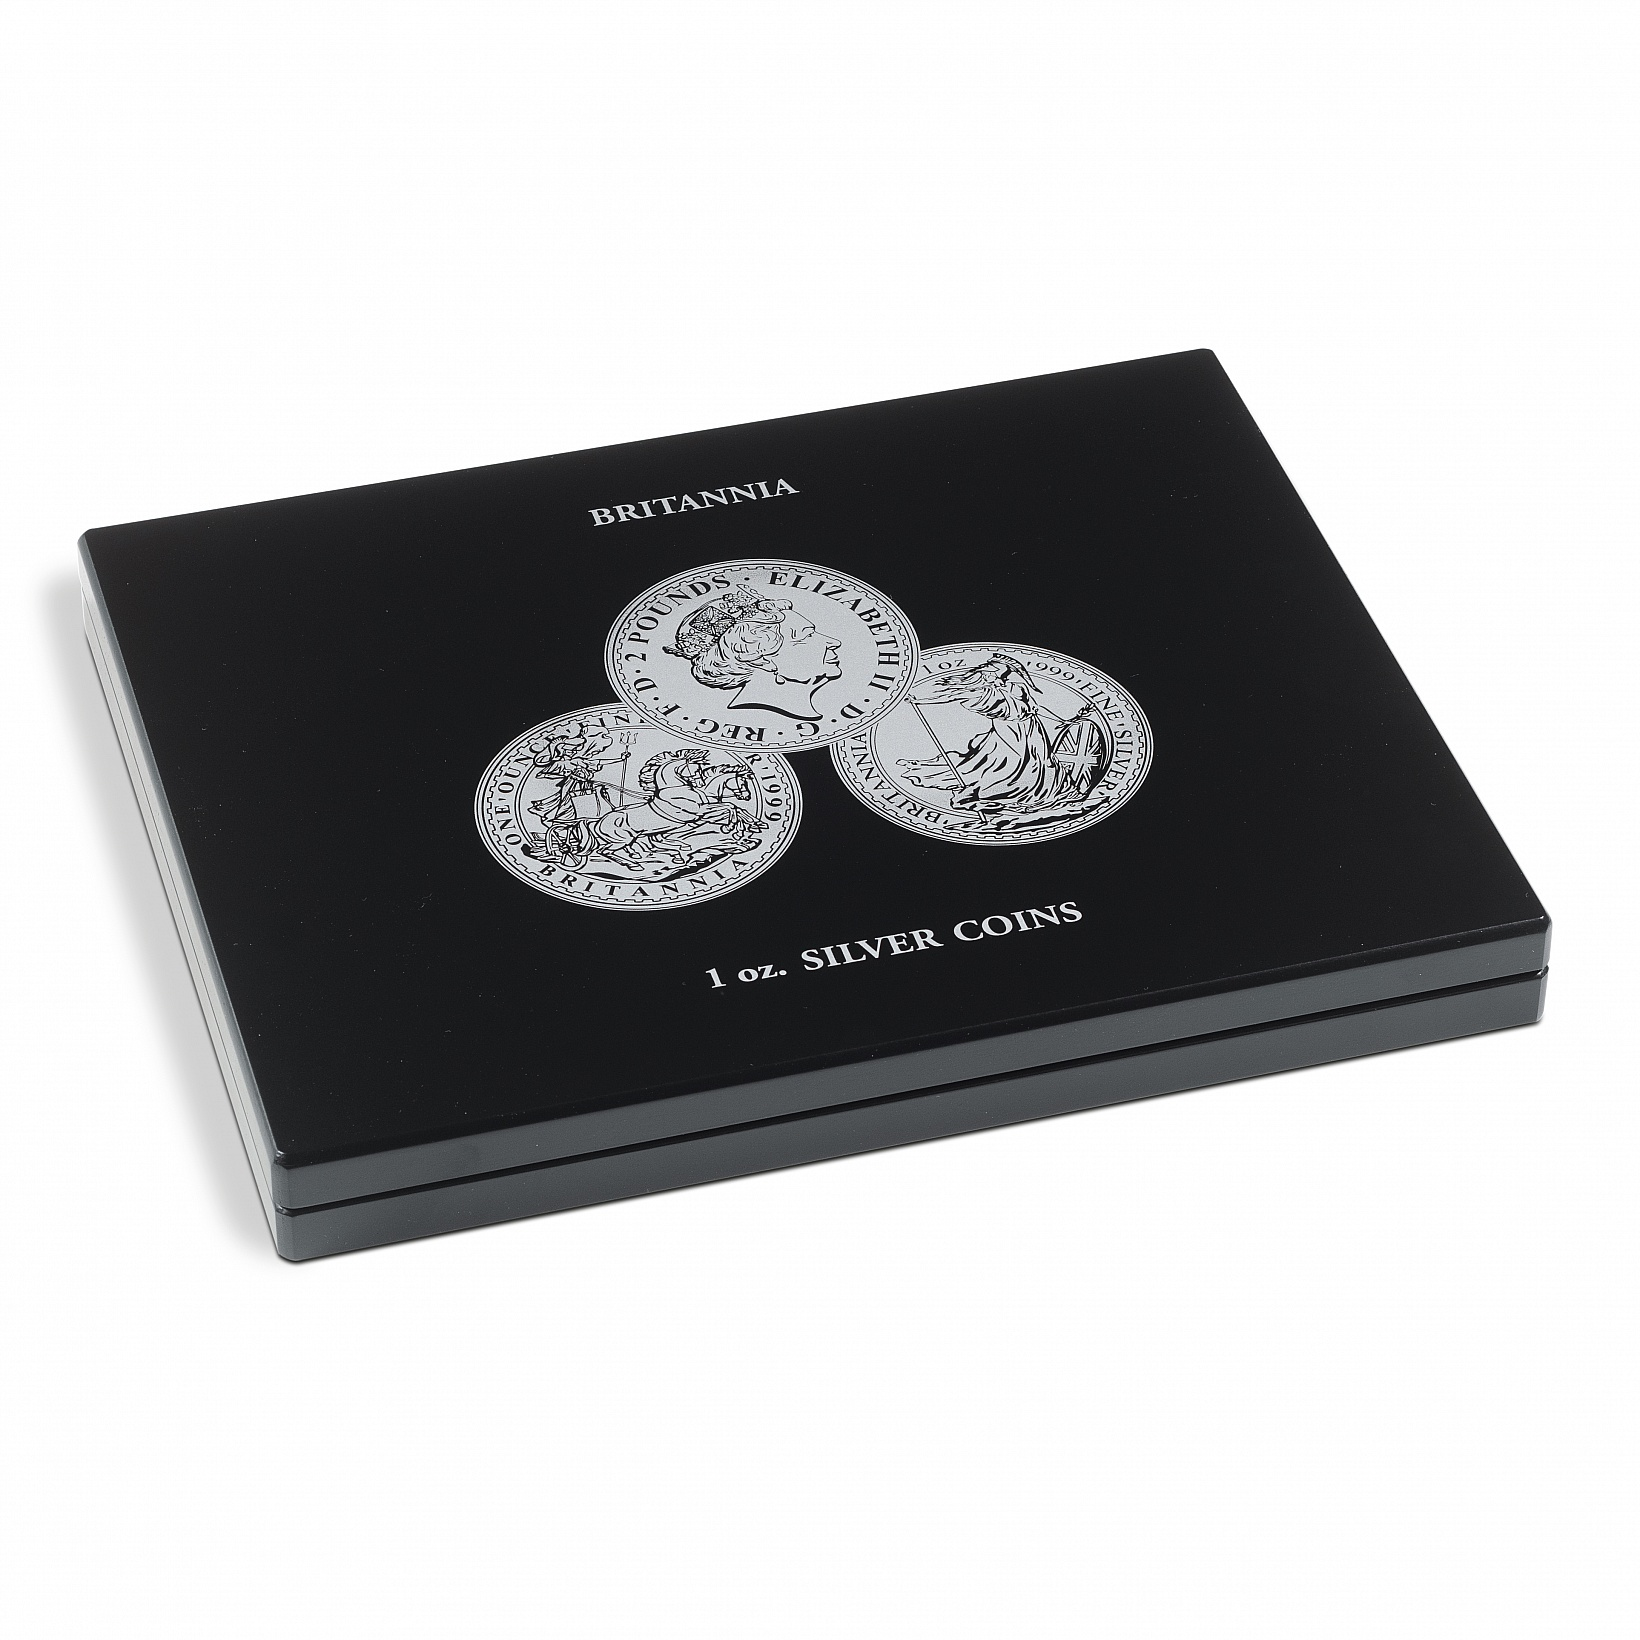 presentation-case-for-20-britannia-silver-coins-1-oz-in-capsules